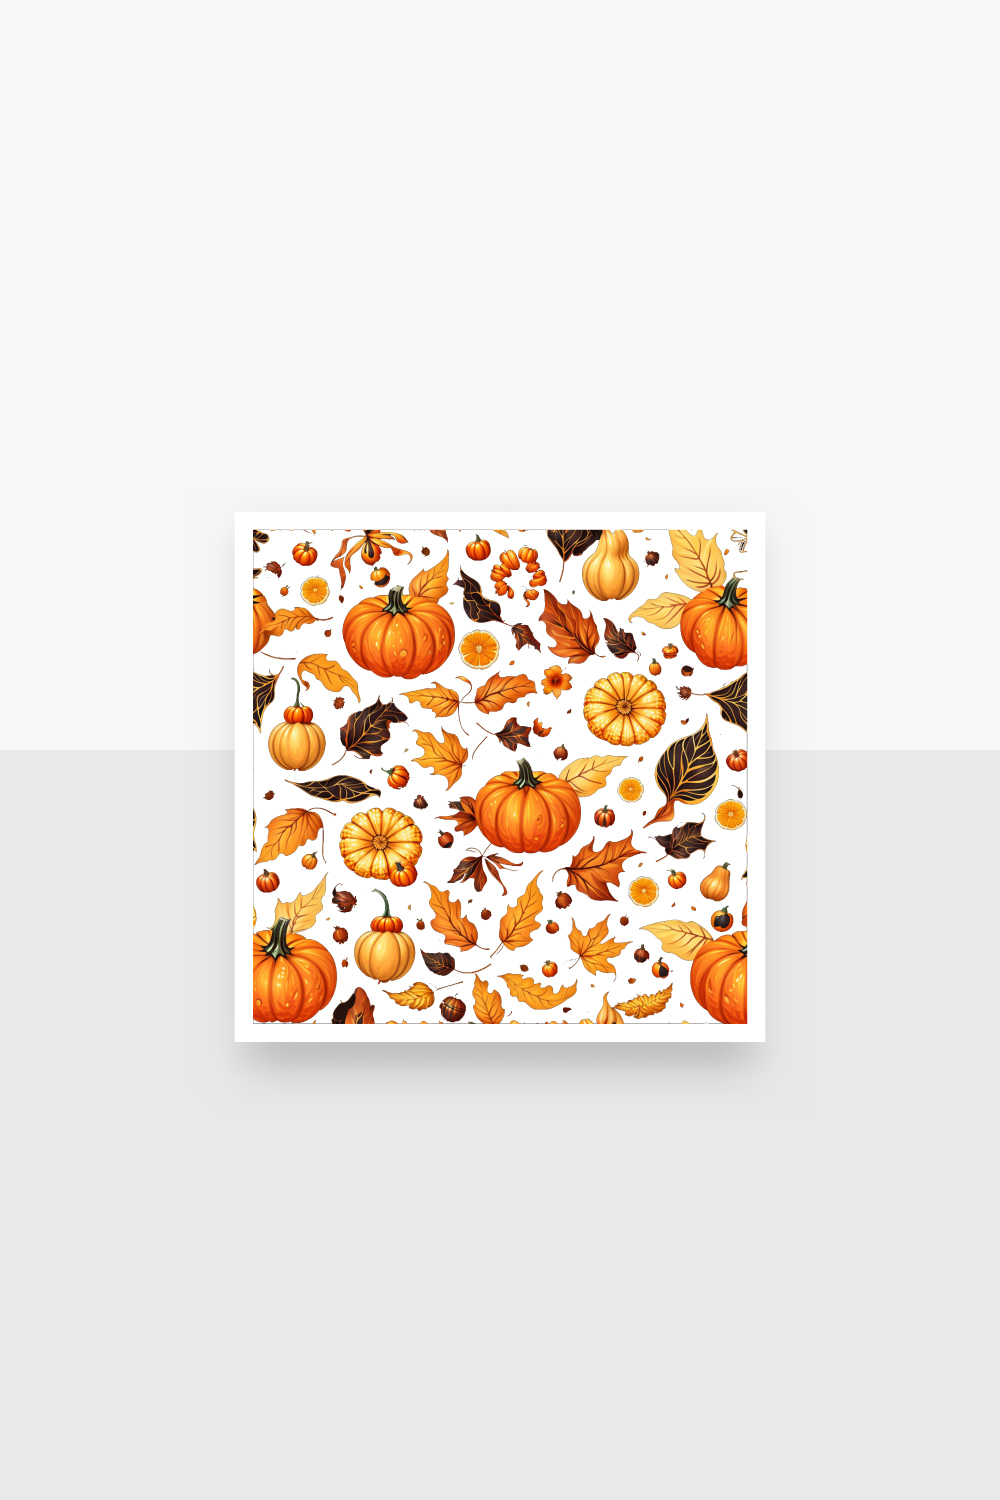 Seamless Autumn Pumpkins fruits Pattern pinterest preview image.